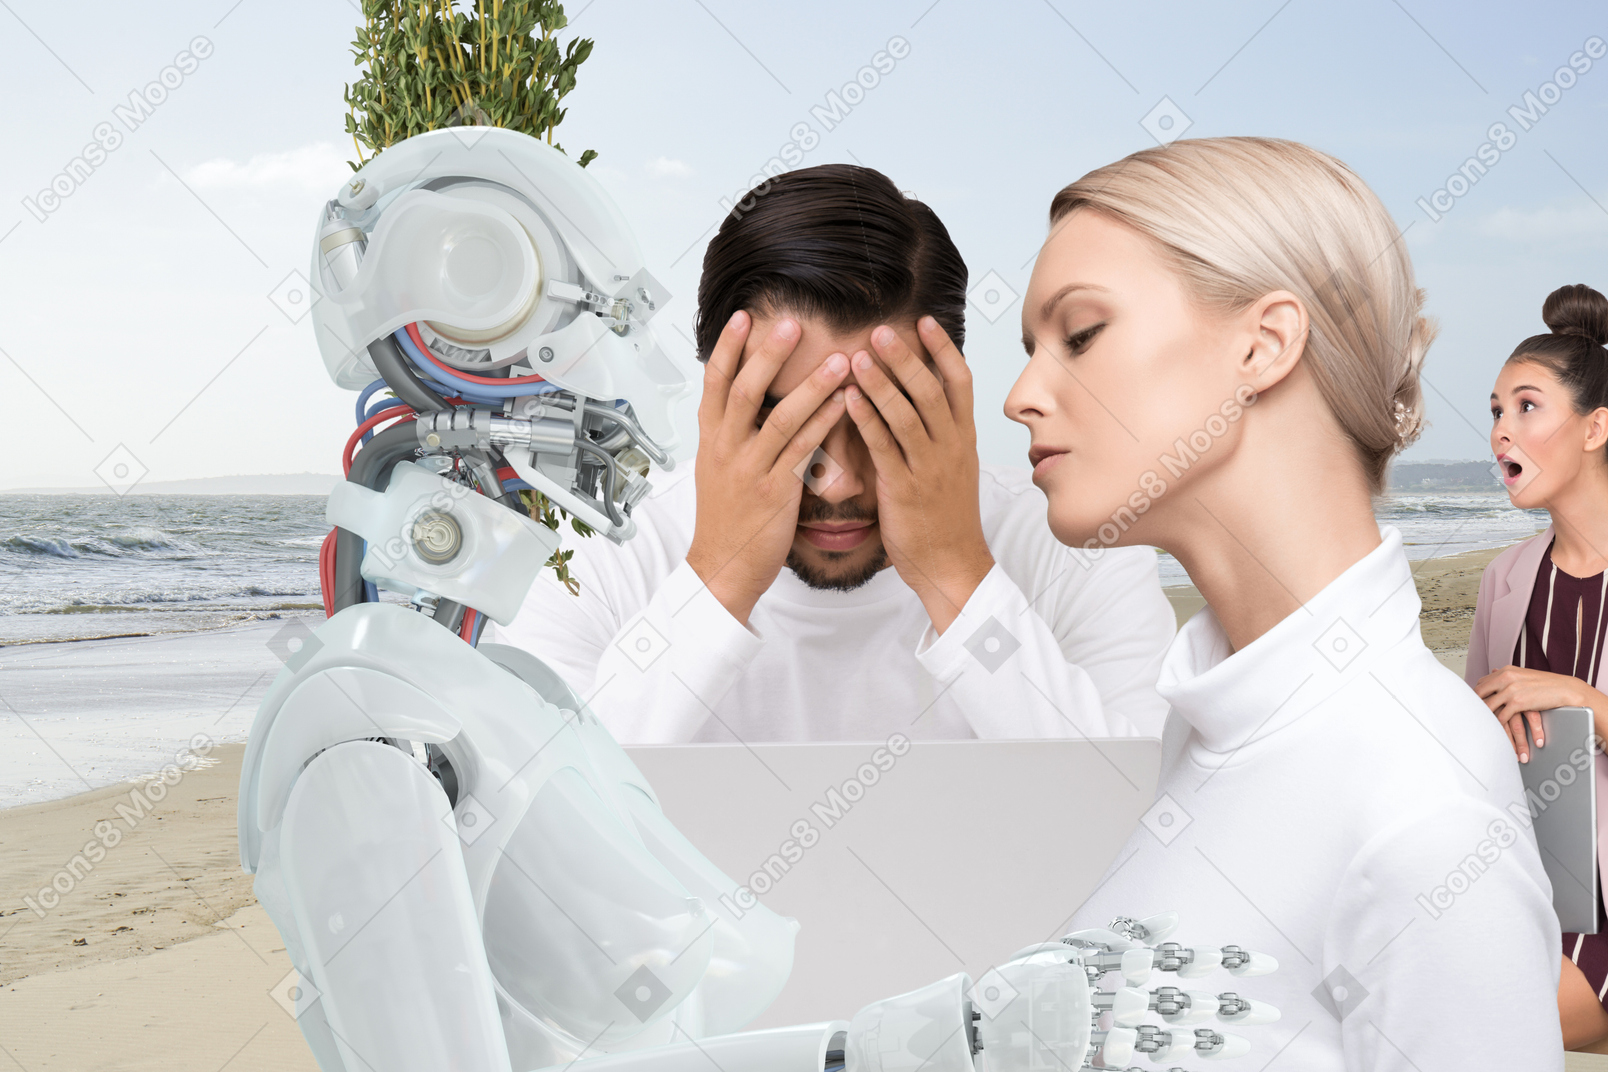 人与机器人之间的爱